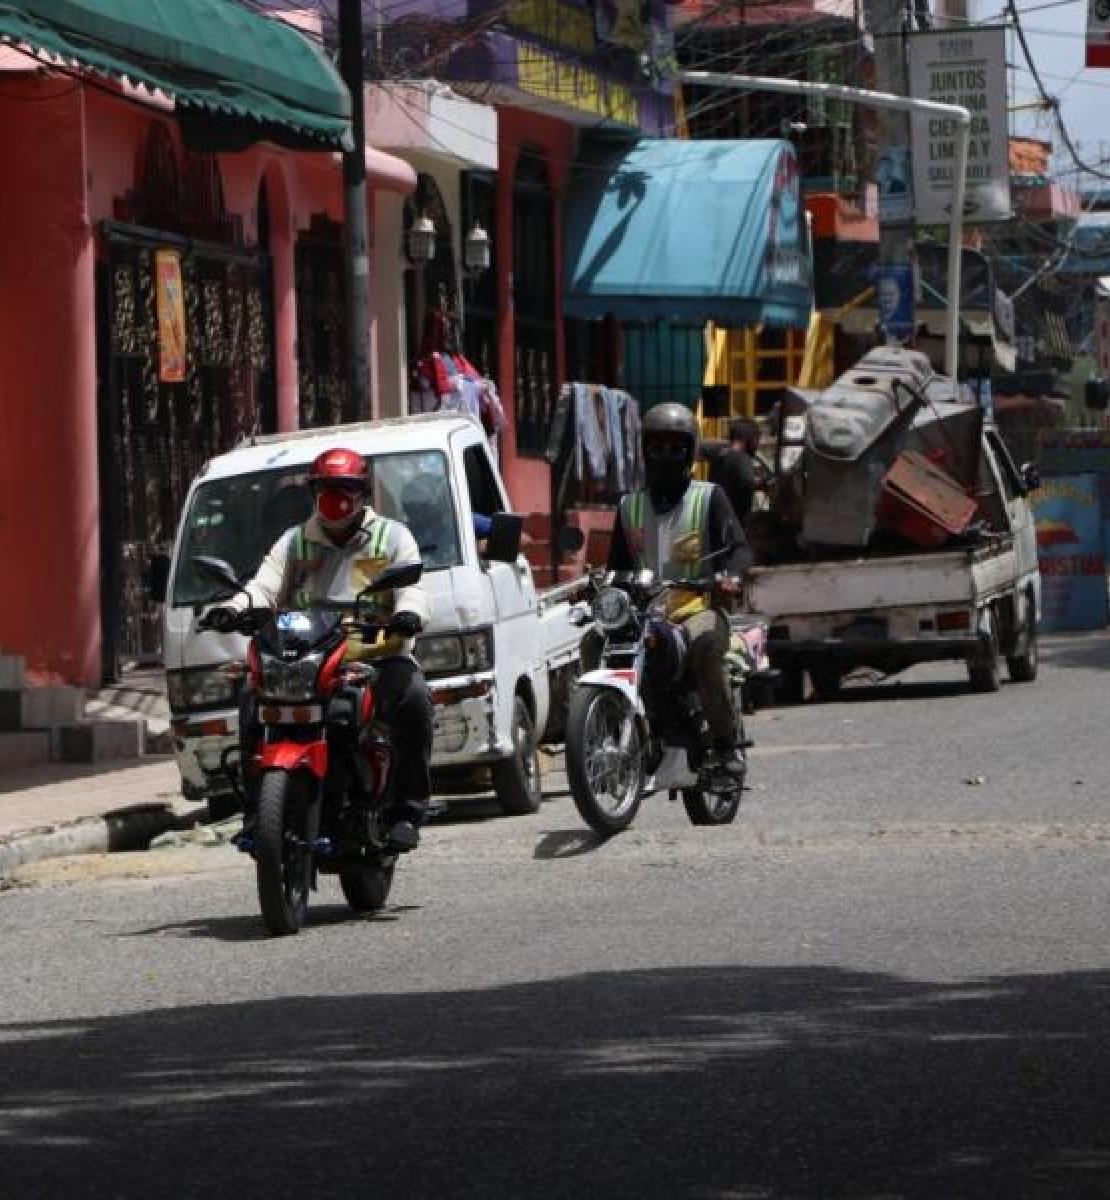 Escena de la vida citadina, donde se ve a motociclistas con protectores faciales y cascos de seguridad conduciendo por una calle; y varias camionetas estacionadas en los laterales de la calle.